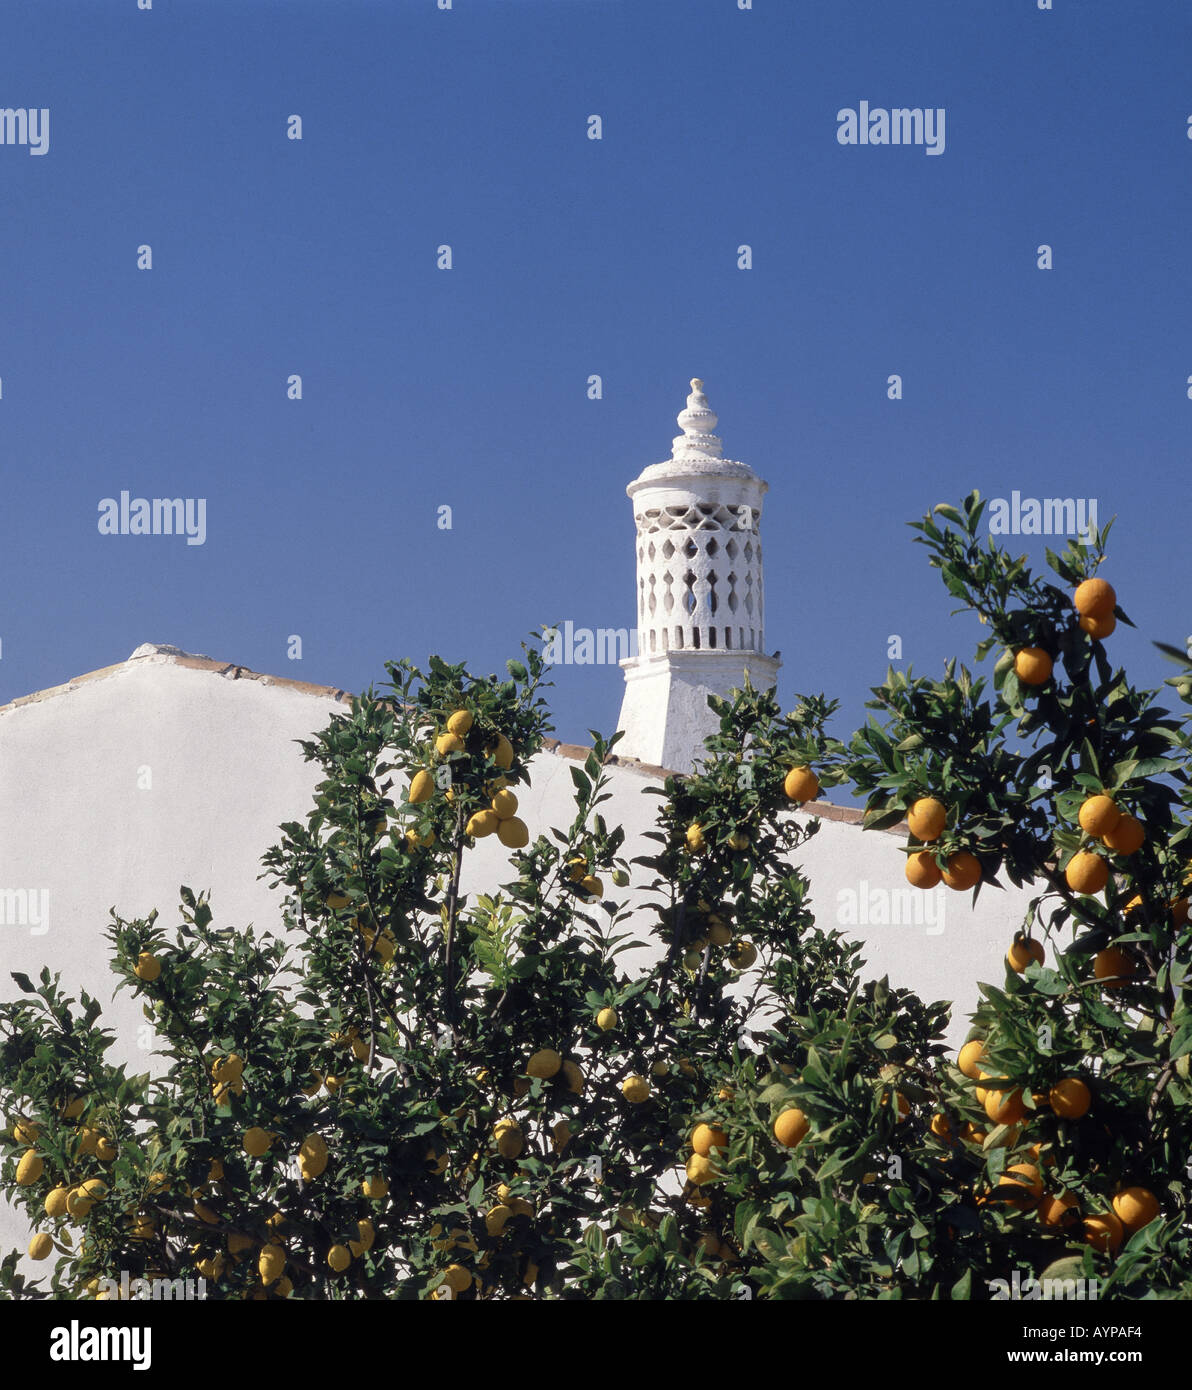 Le Portugal l'Algarve, mauresque ornement cheminée sur cottage avec orange et citron Banque D'Images